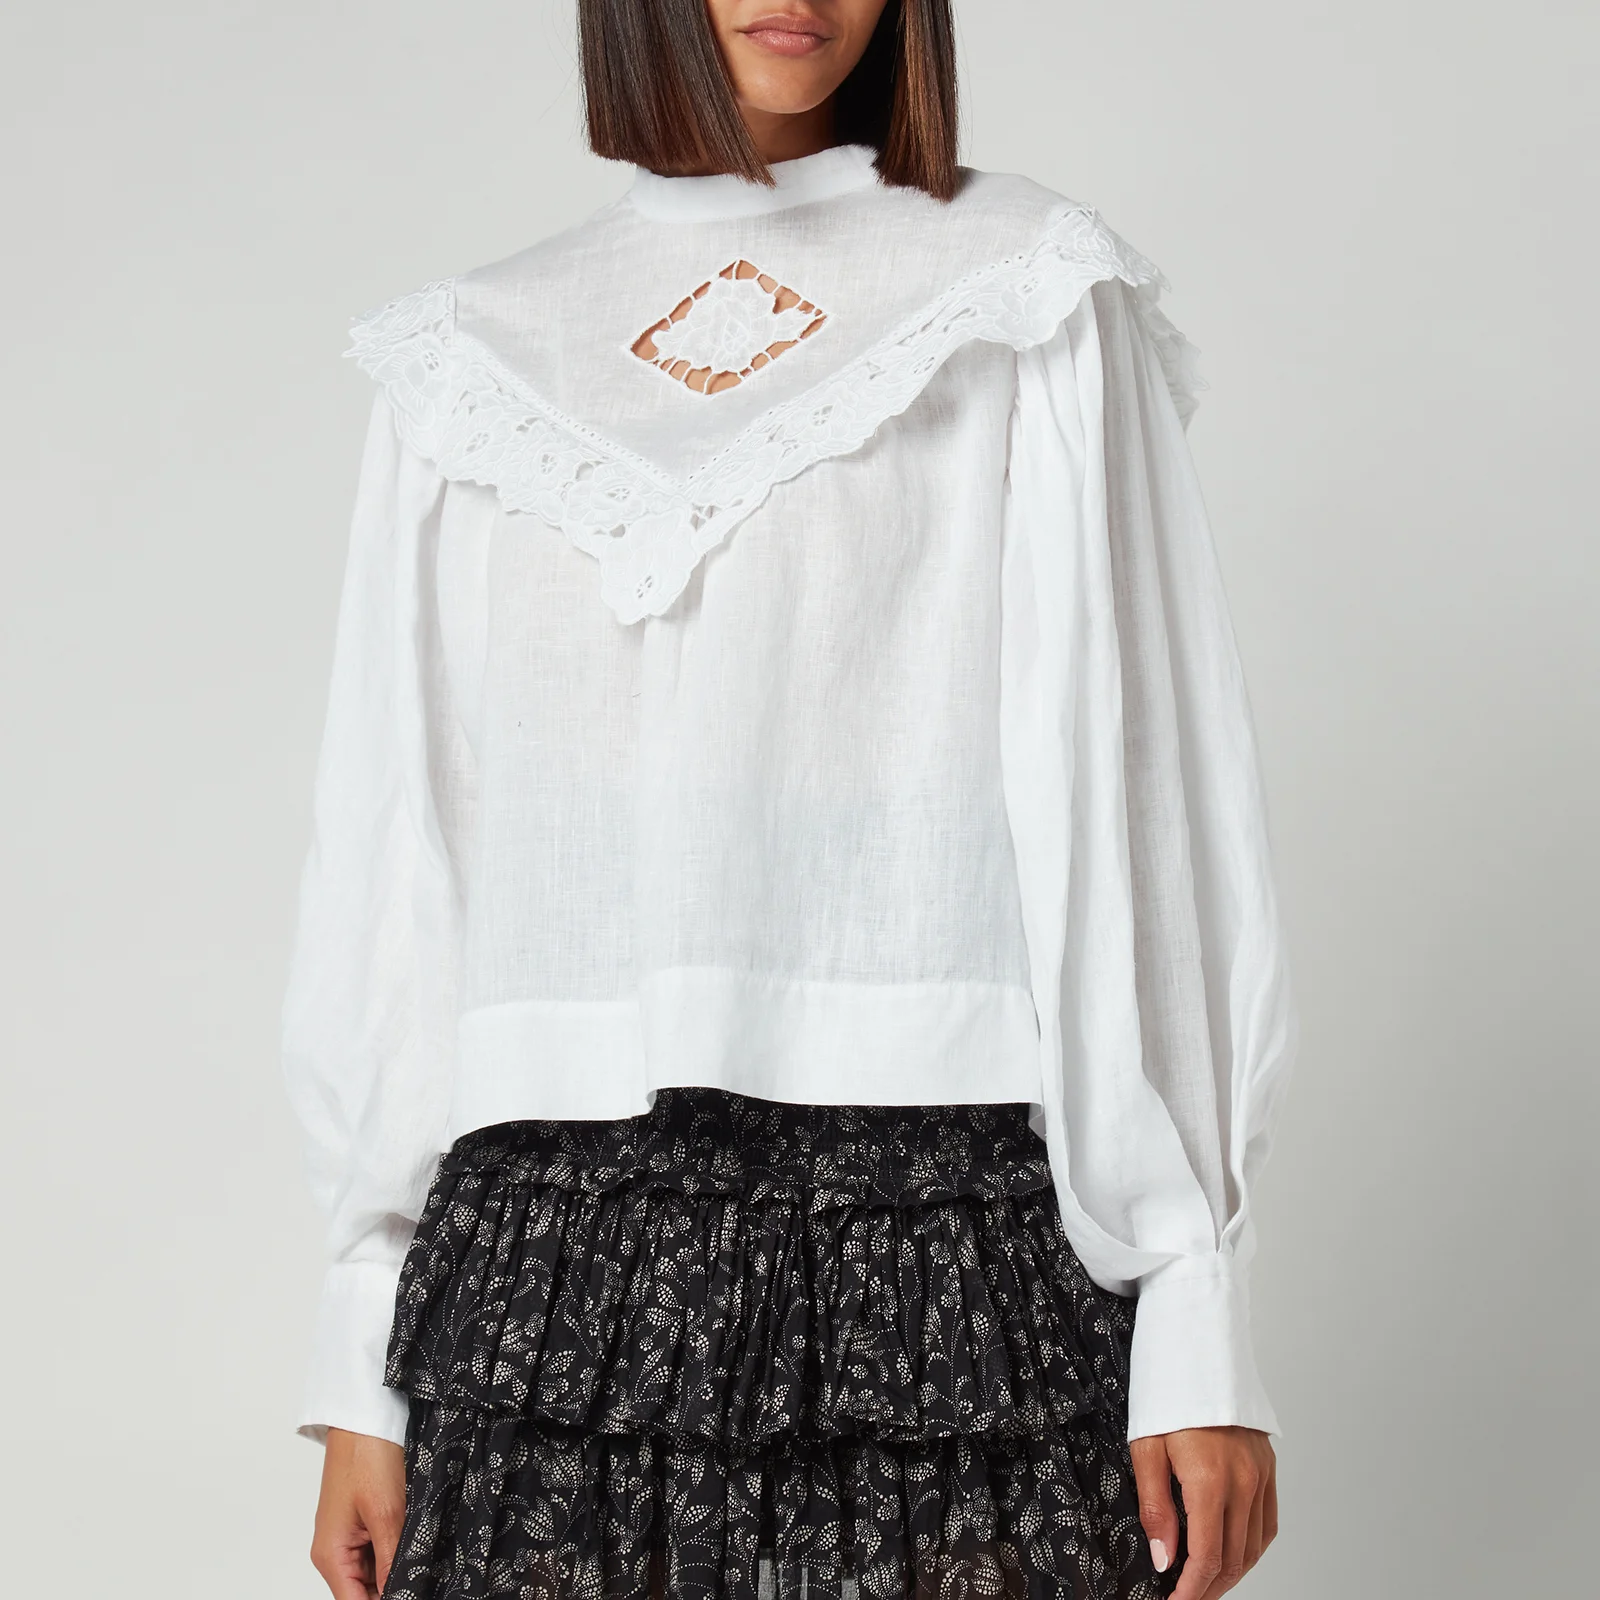 Marant Étoile Women's Elija Shirt - White Image 1